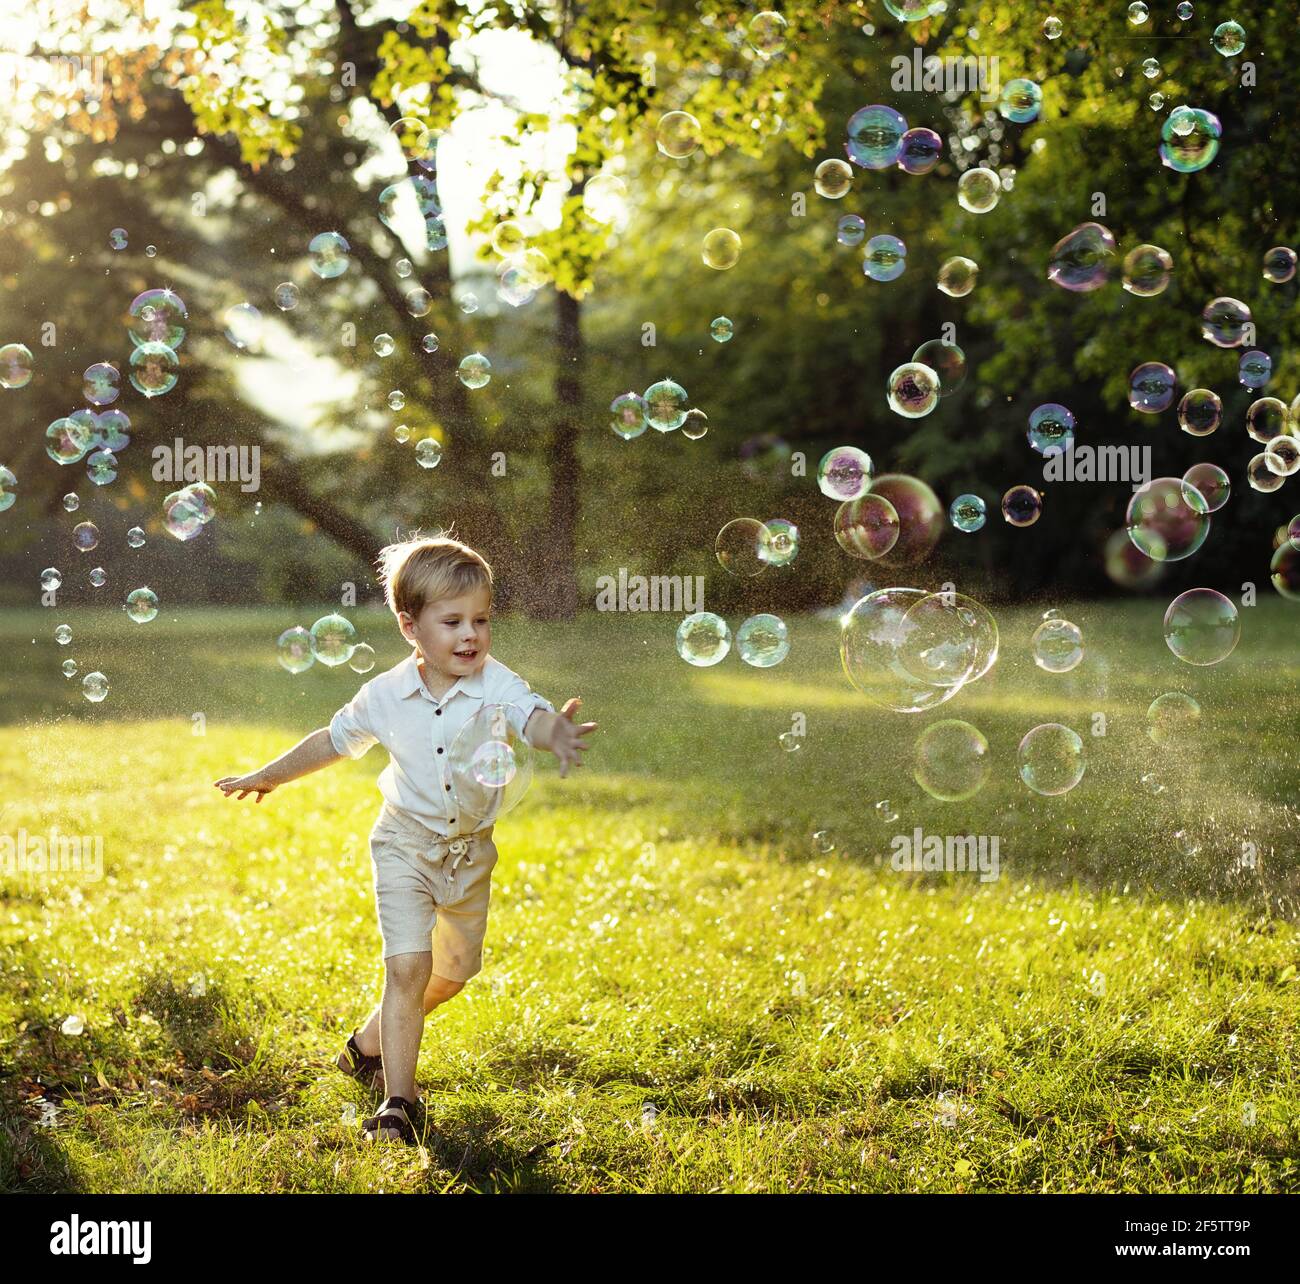 Lindo y pequeño niño persiguiendo burbujas de jabón Foto de stock